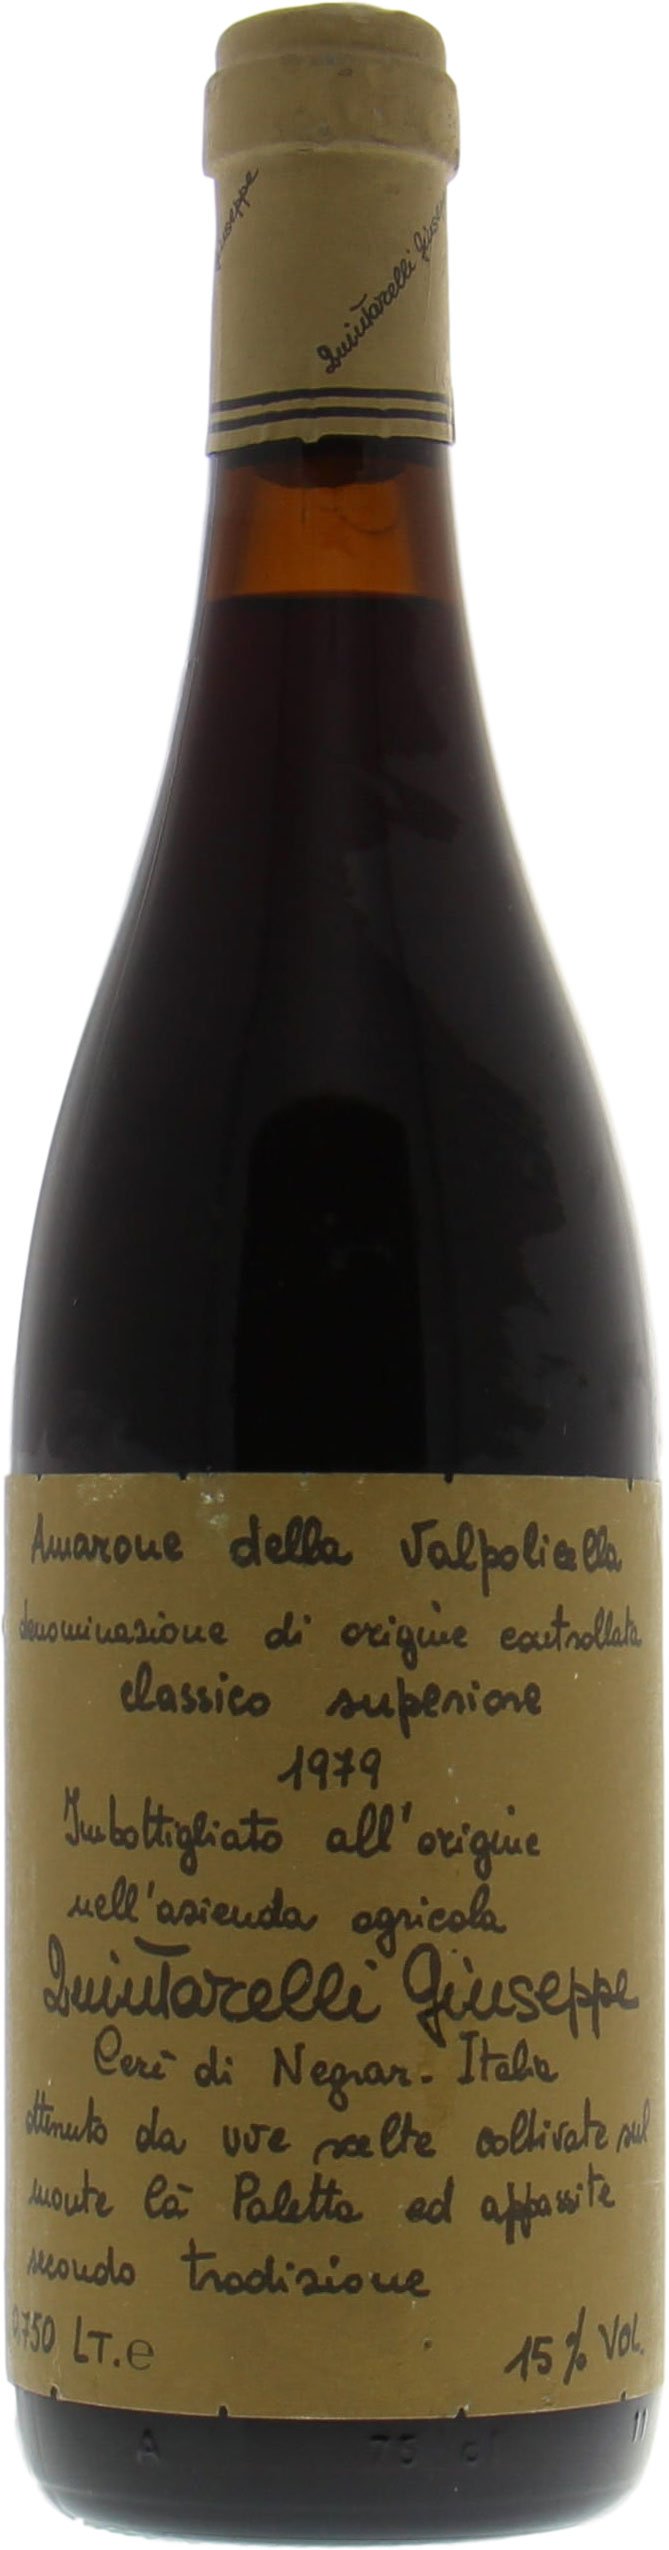 Quintarelli  - Amarone della Valpolicella Classico 1979